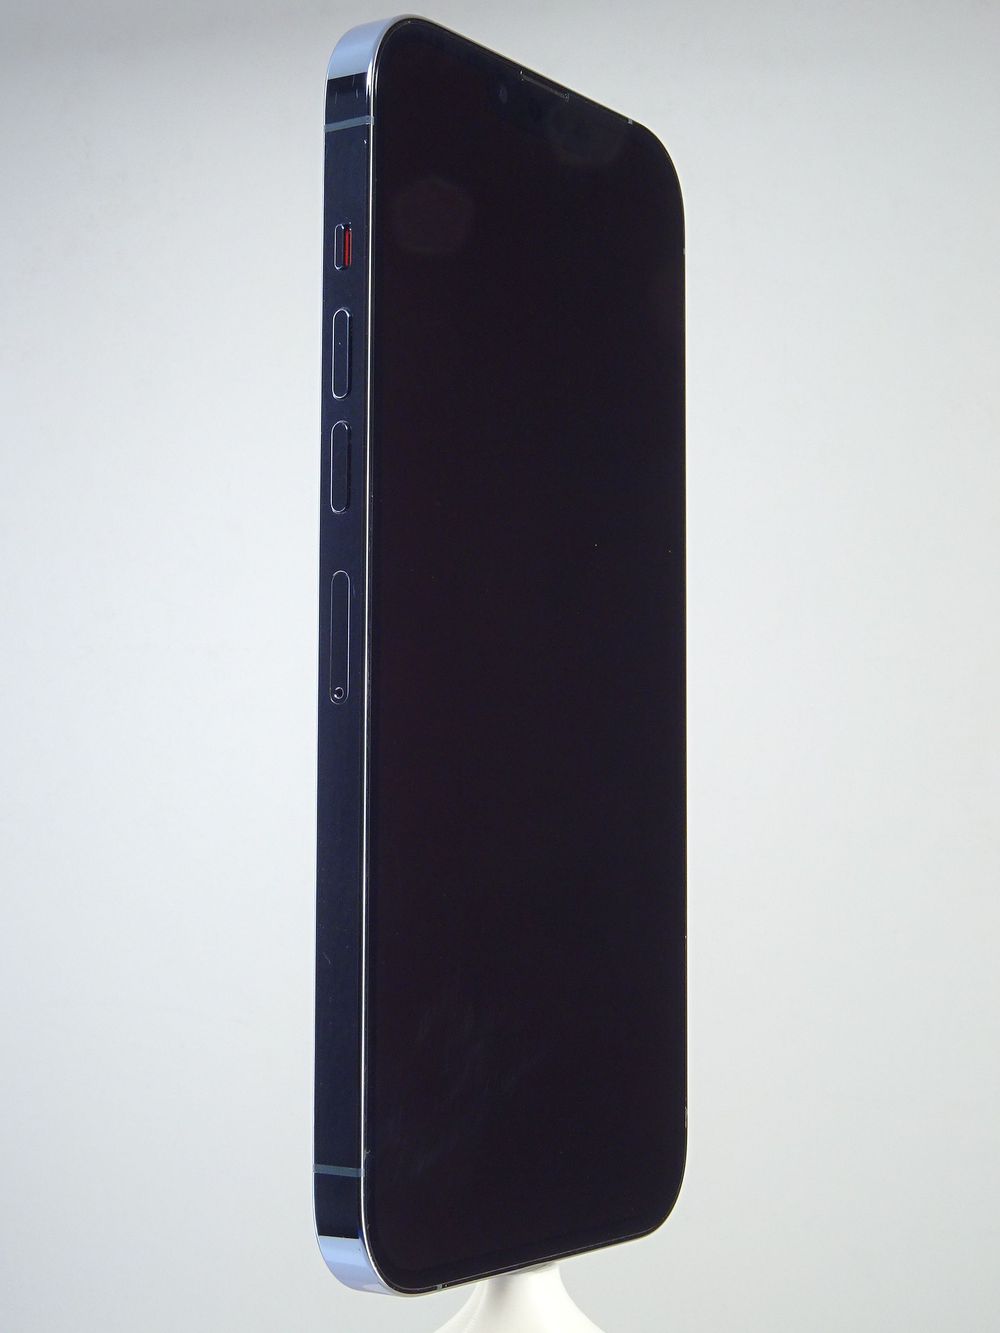 Mobiltelefon Apple iPhone 13 Pro Max, Sierra Blue, 128 GB, Foarte Bun